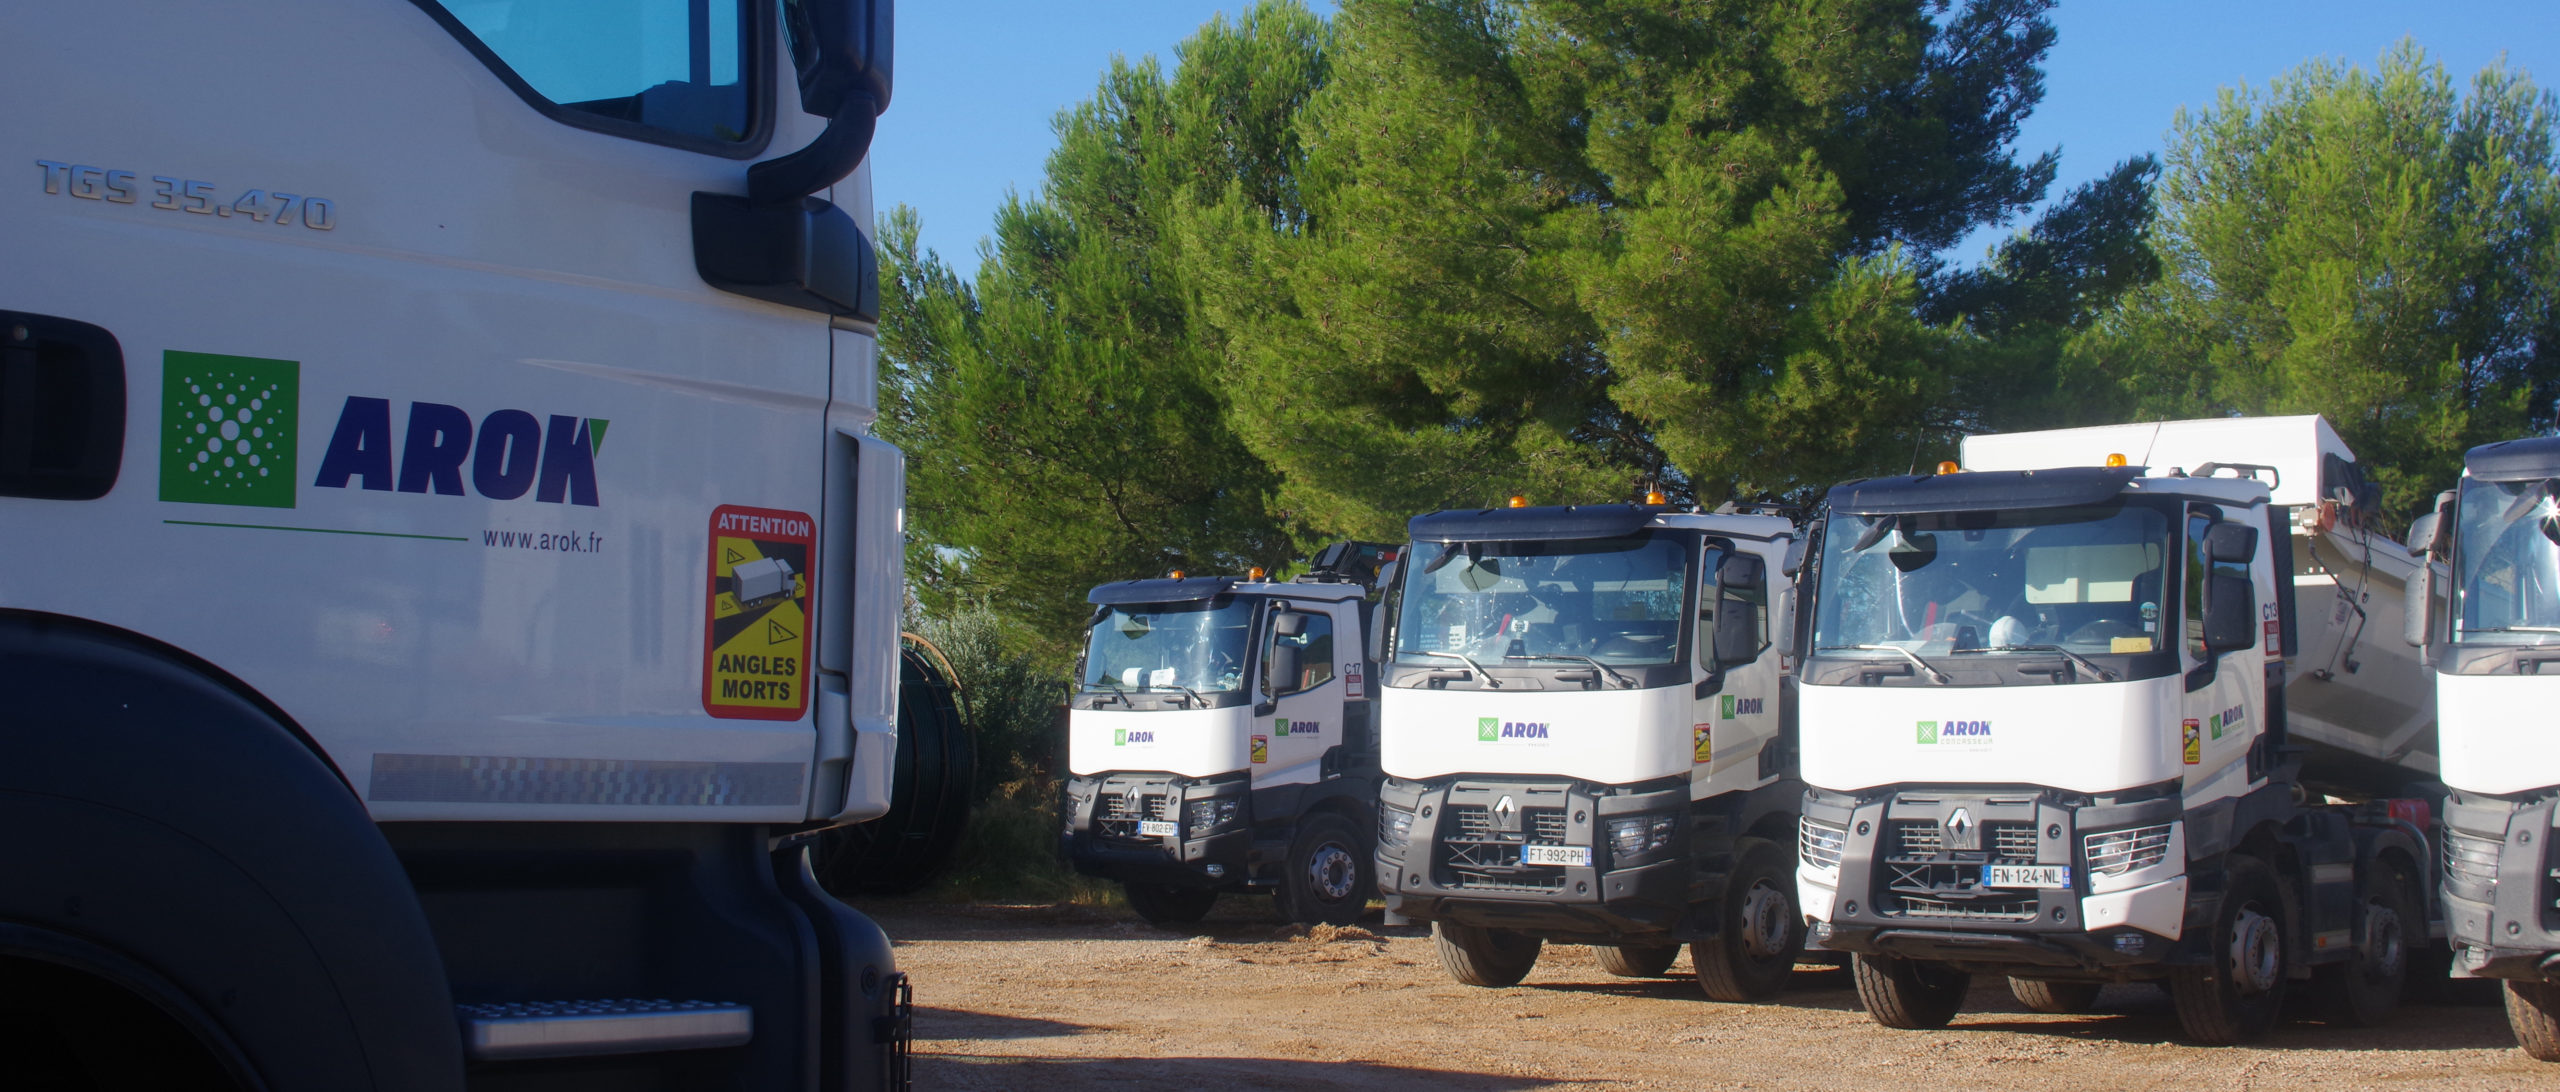 Camions du centre de recyclage arok à puget ville